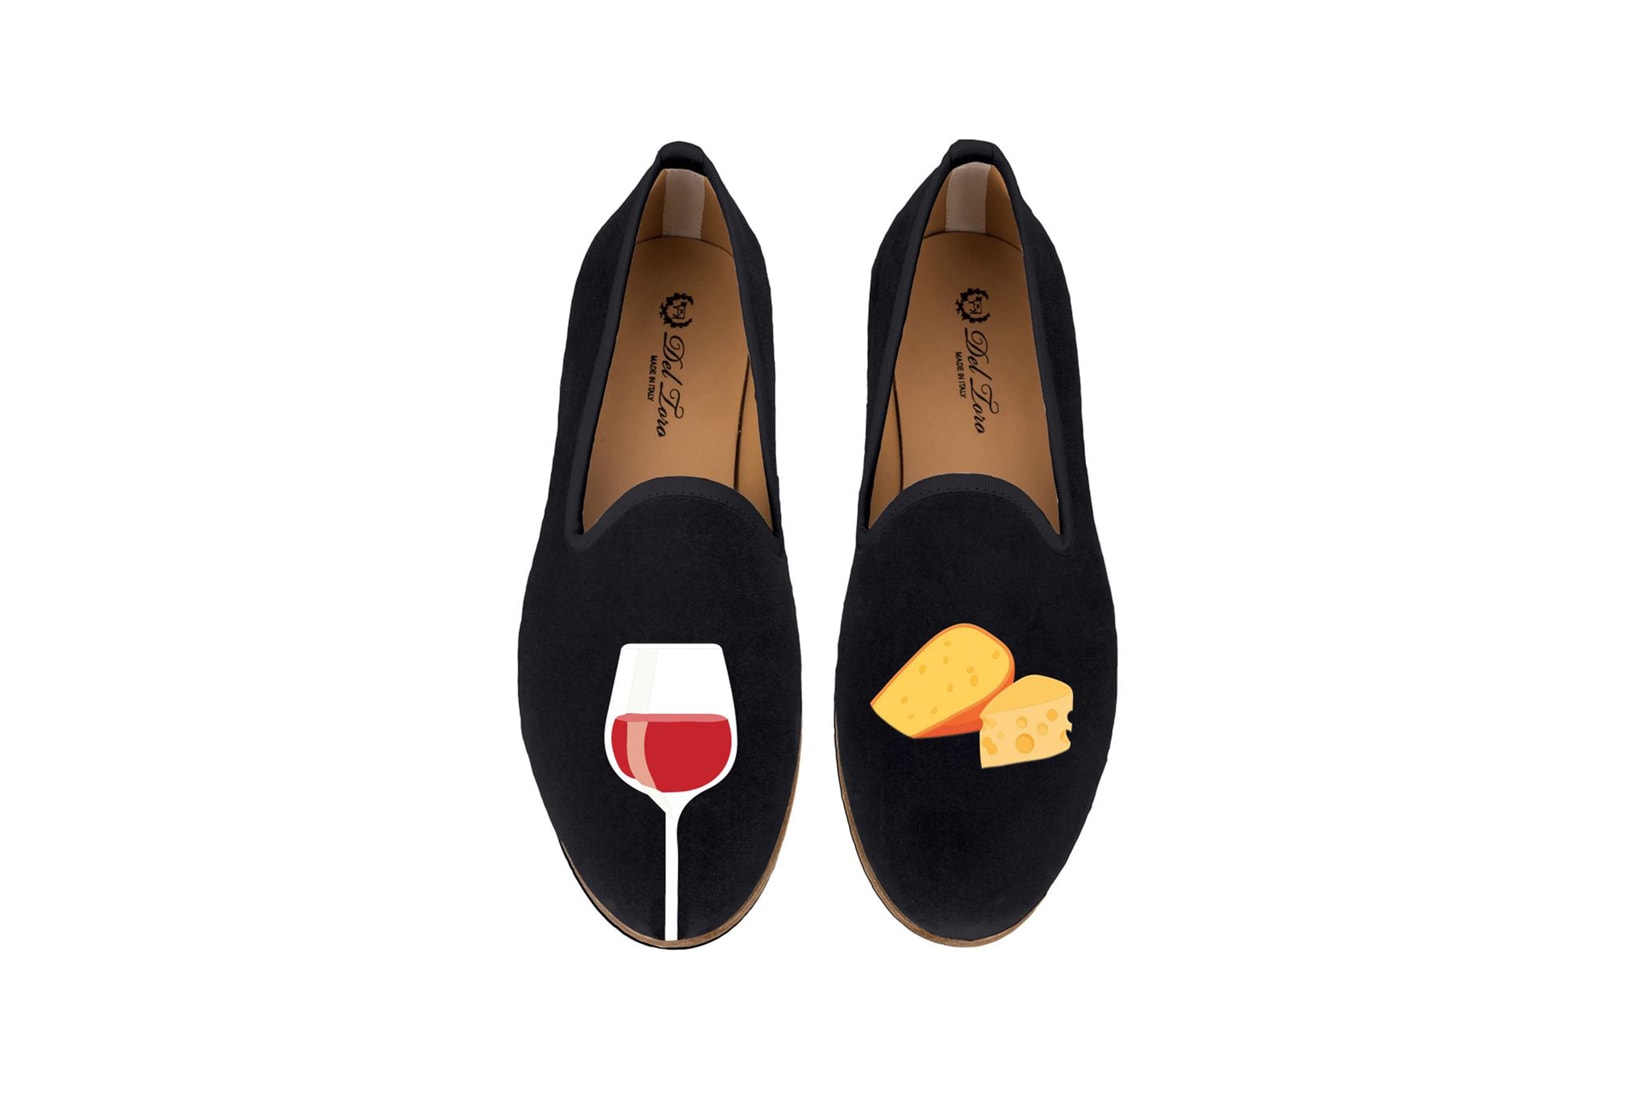 Del Toro Foodies Collection Moda Operandi Cheese & Wine Slipper Black